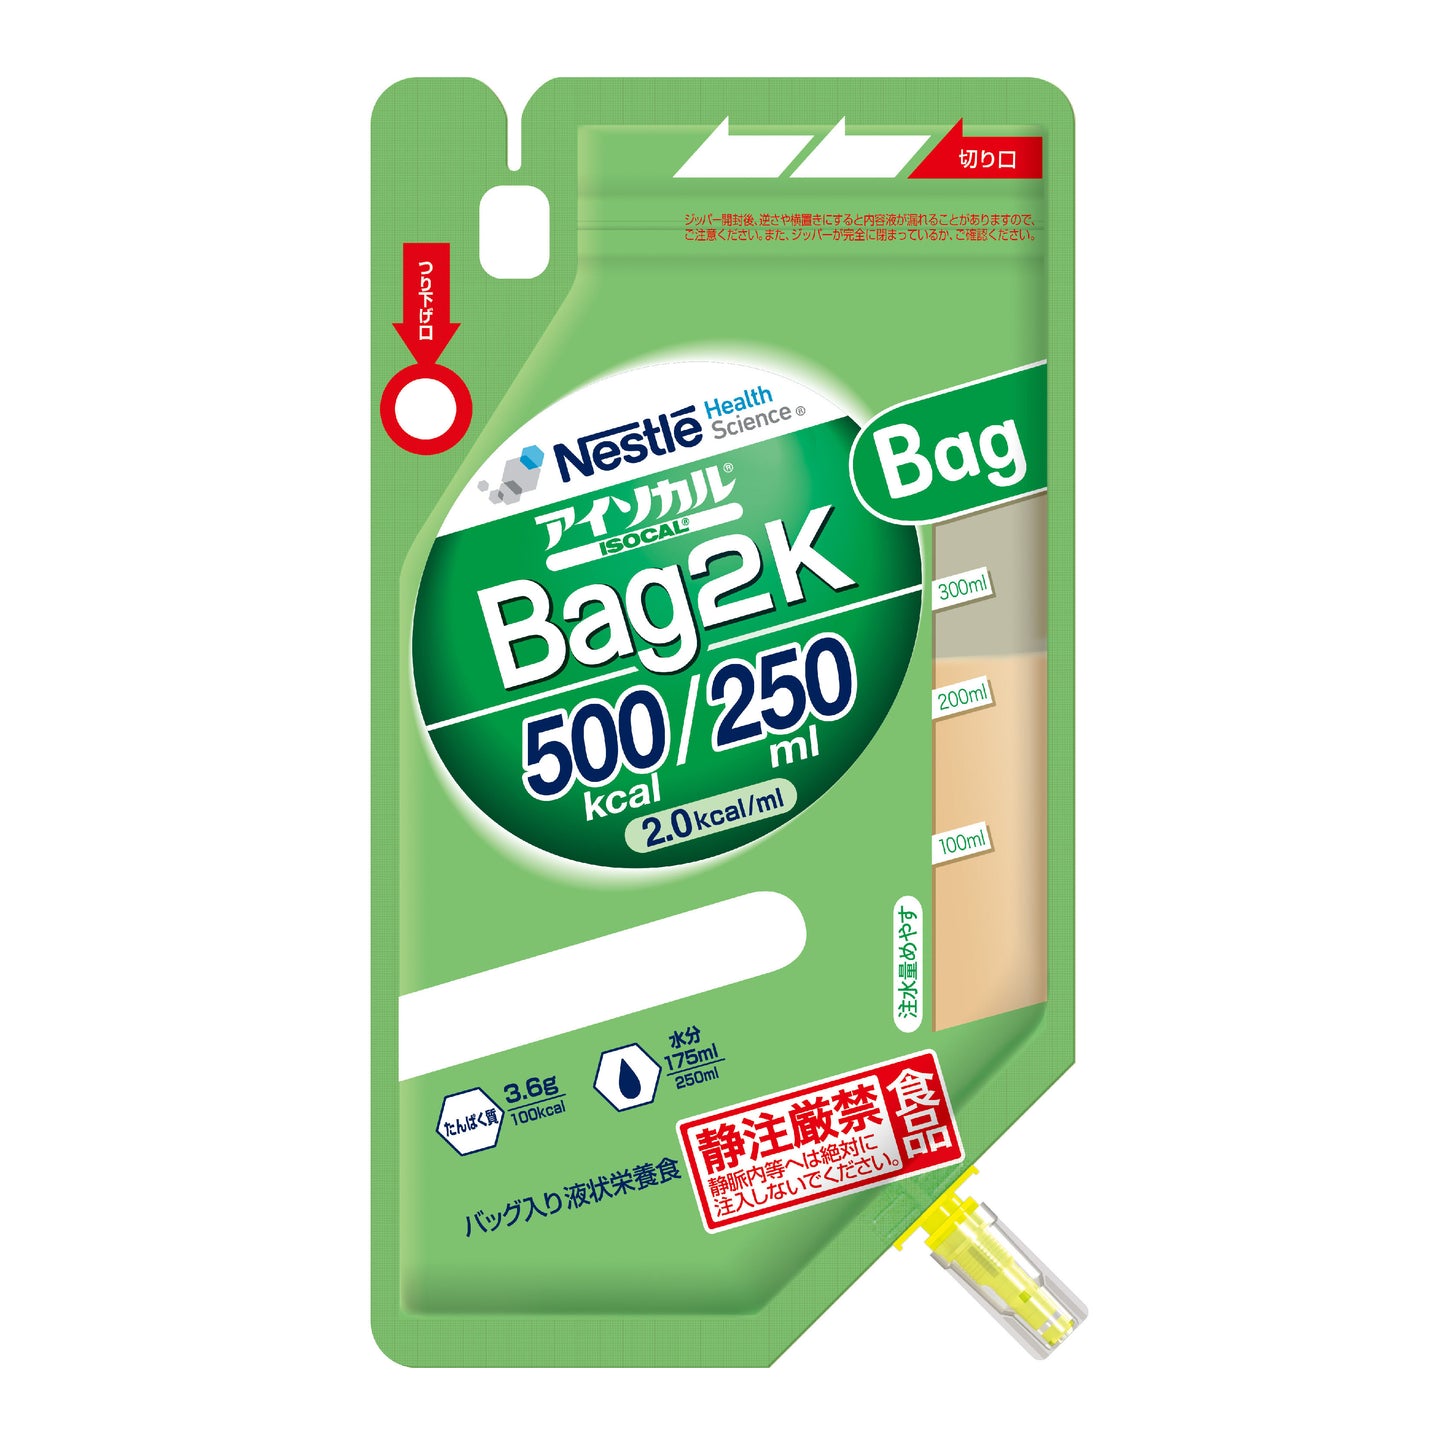 アイソカル Bag2K<br>250ml 18バッグ